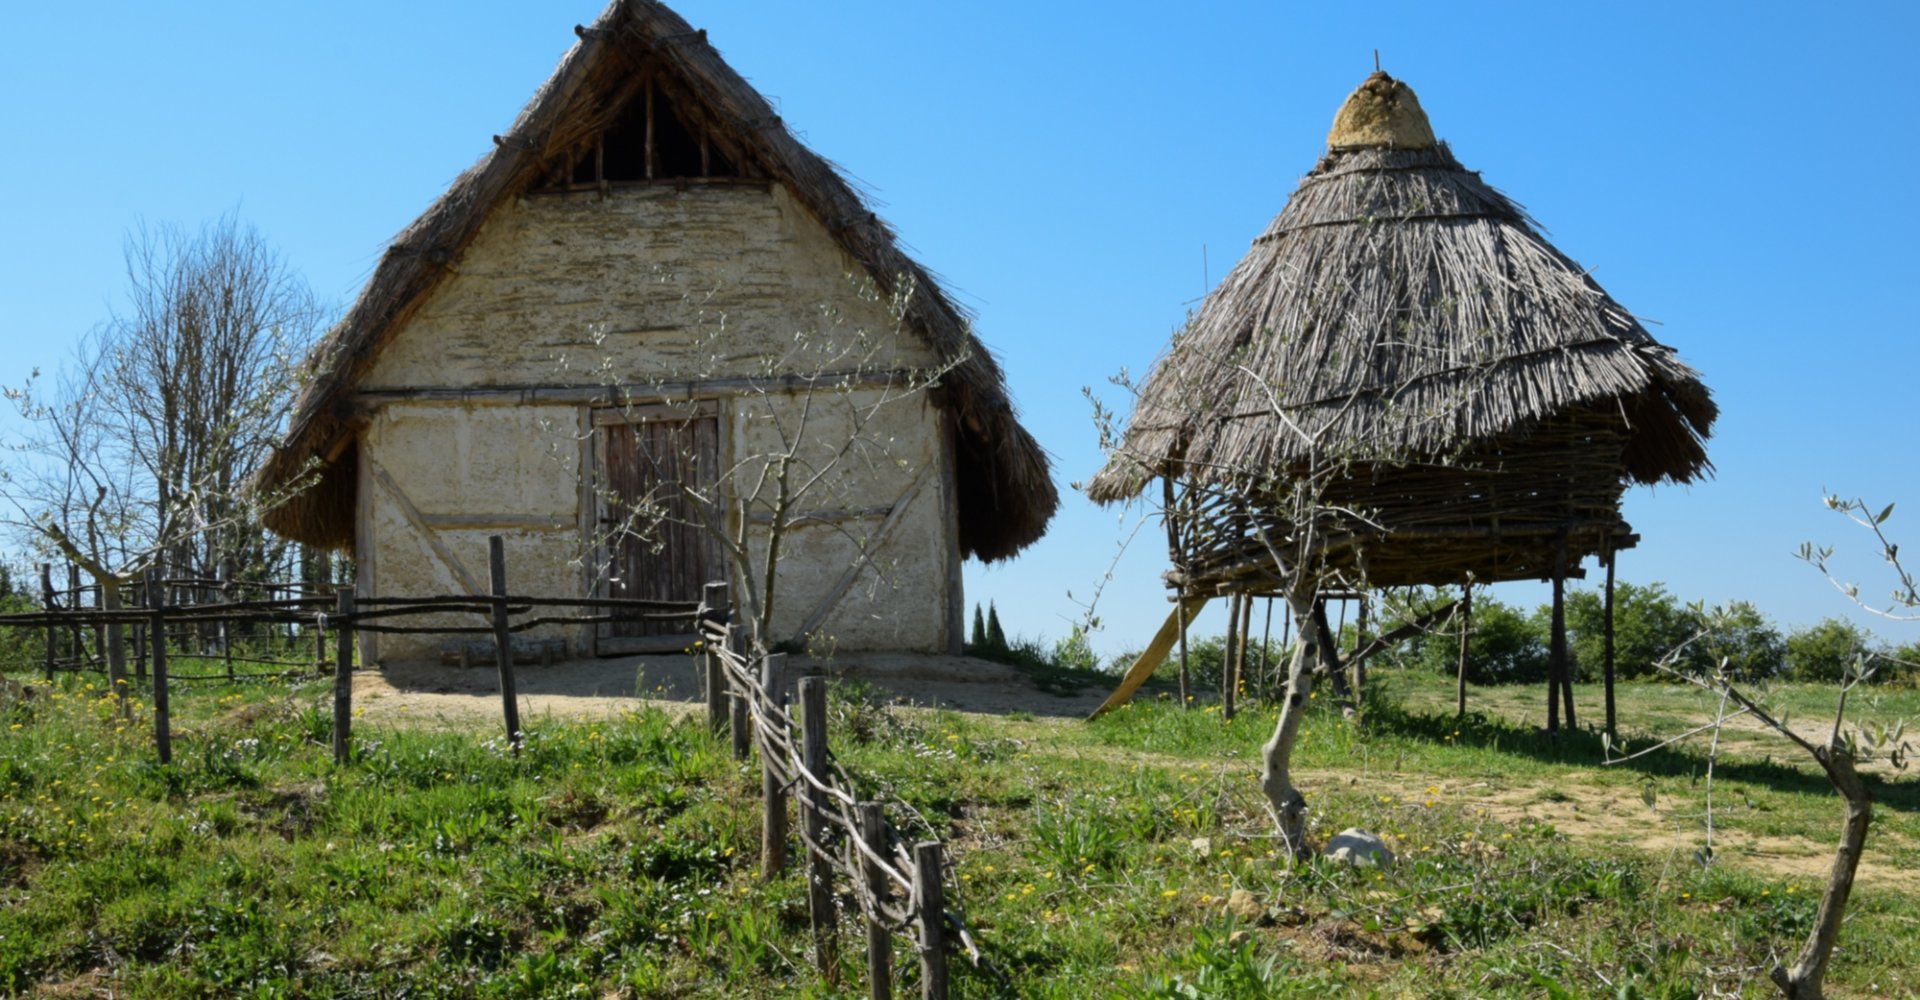 Hütten im Archäologischen Park von Poggibonsi